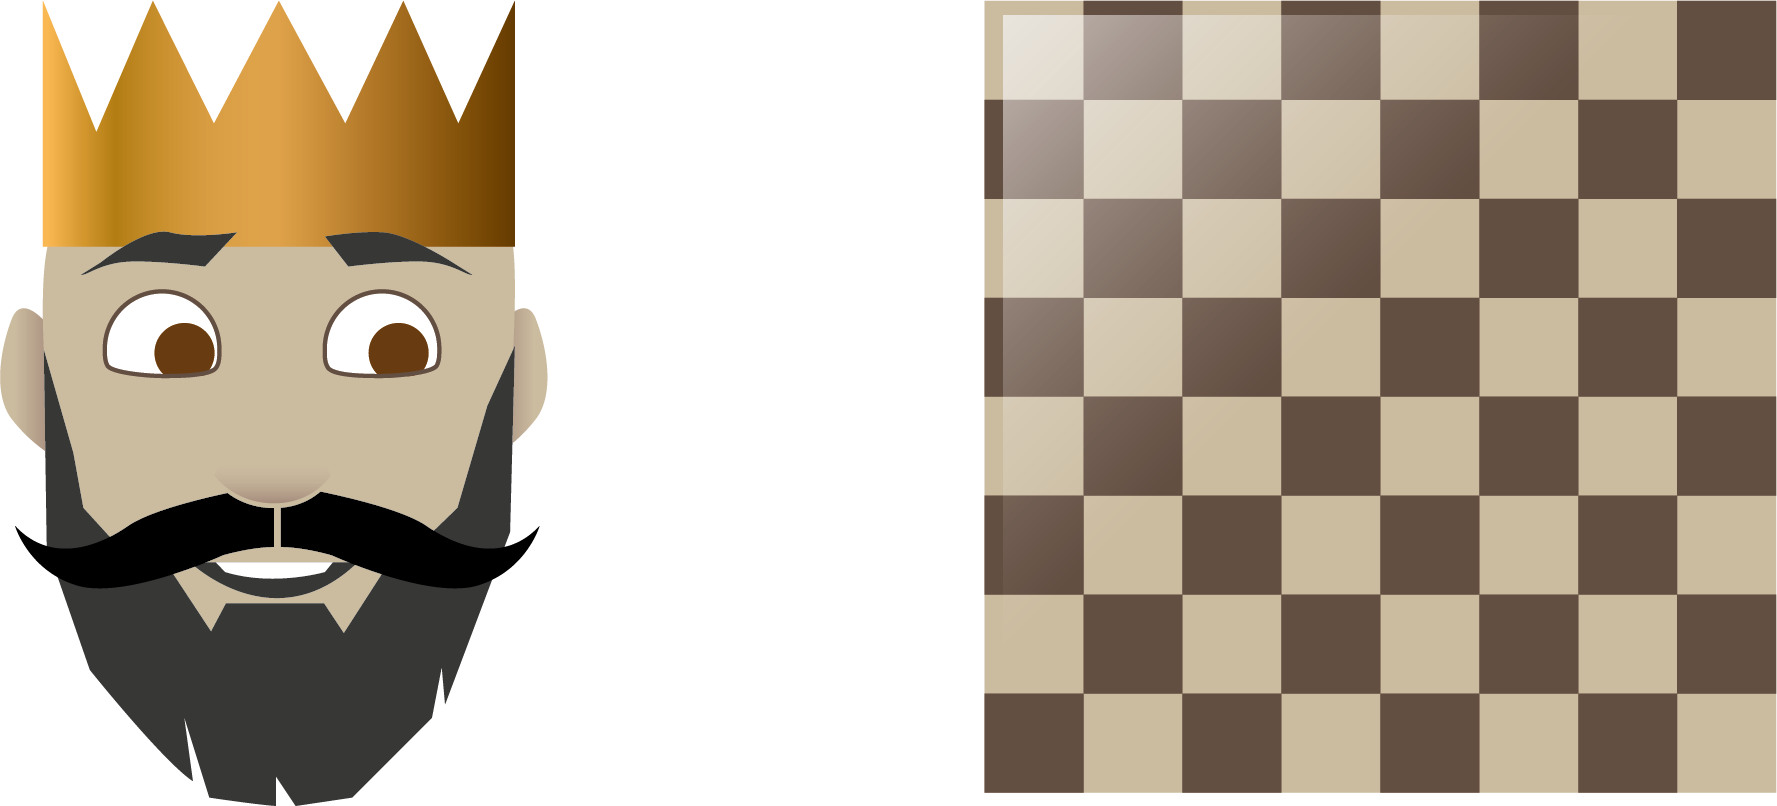 Konge og sjakkbrett